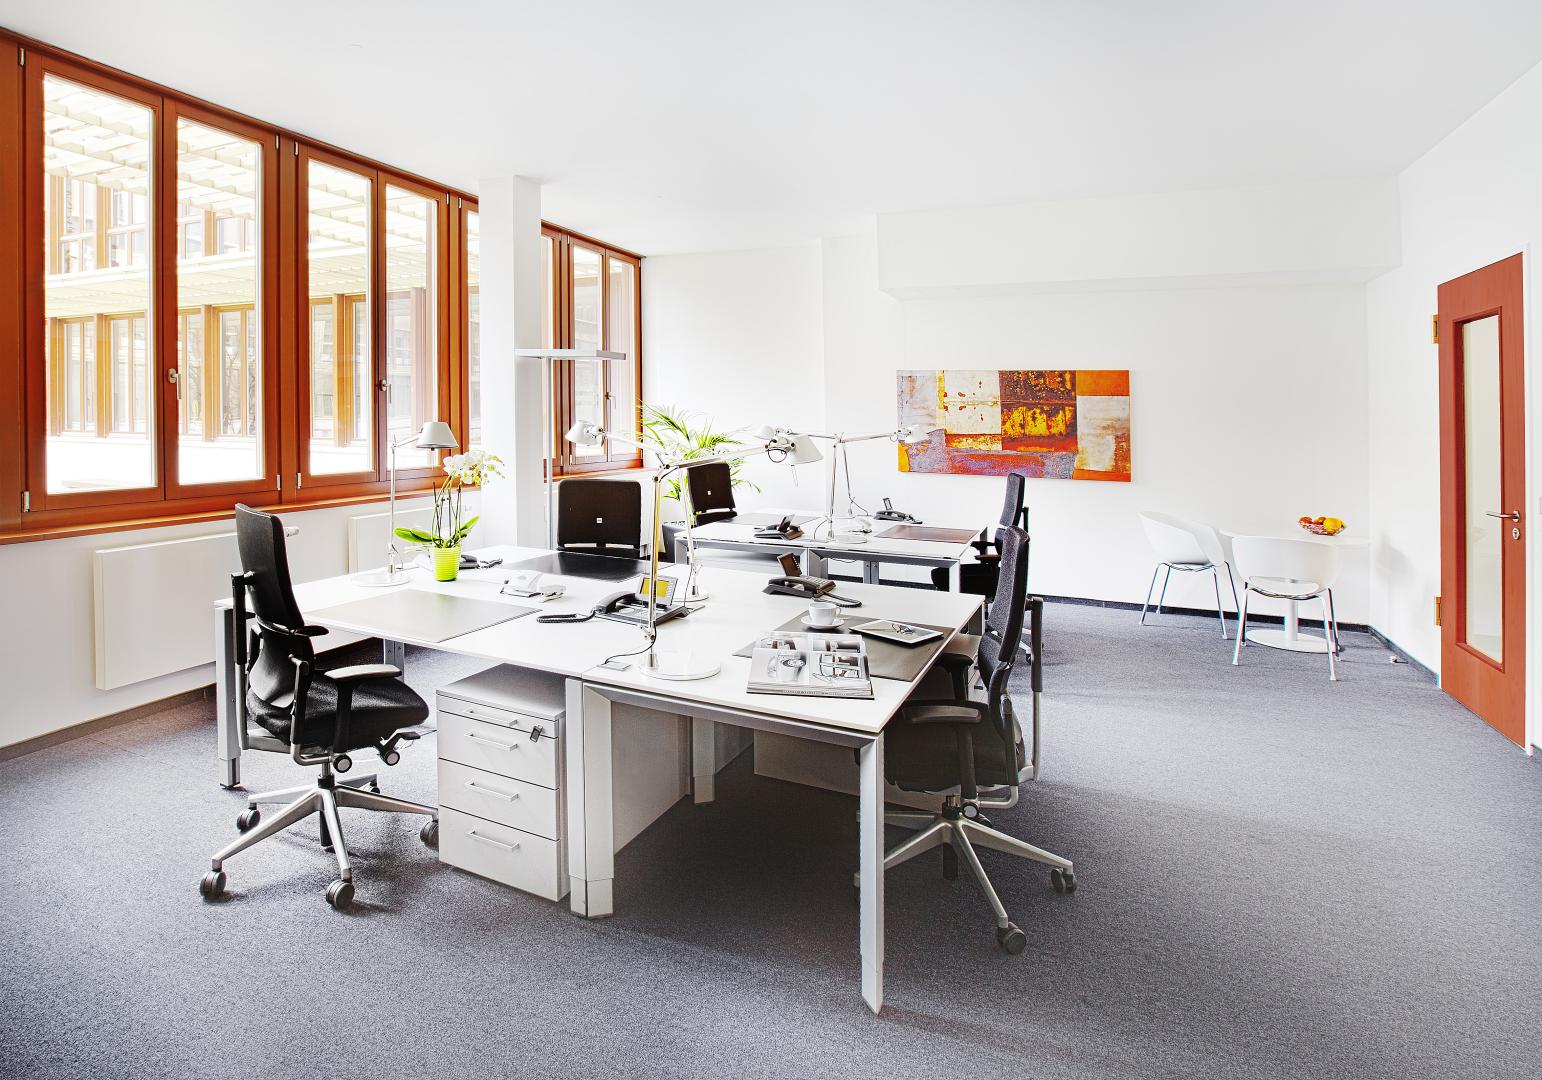 Office Space For Rent Radlkoferstrasse 2 Munich